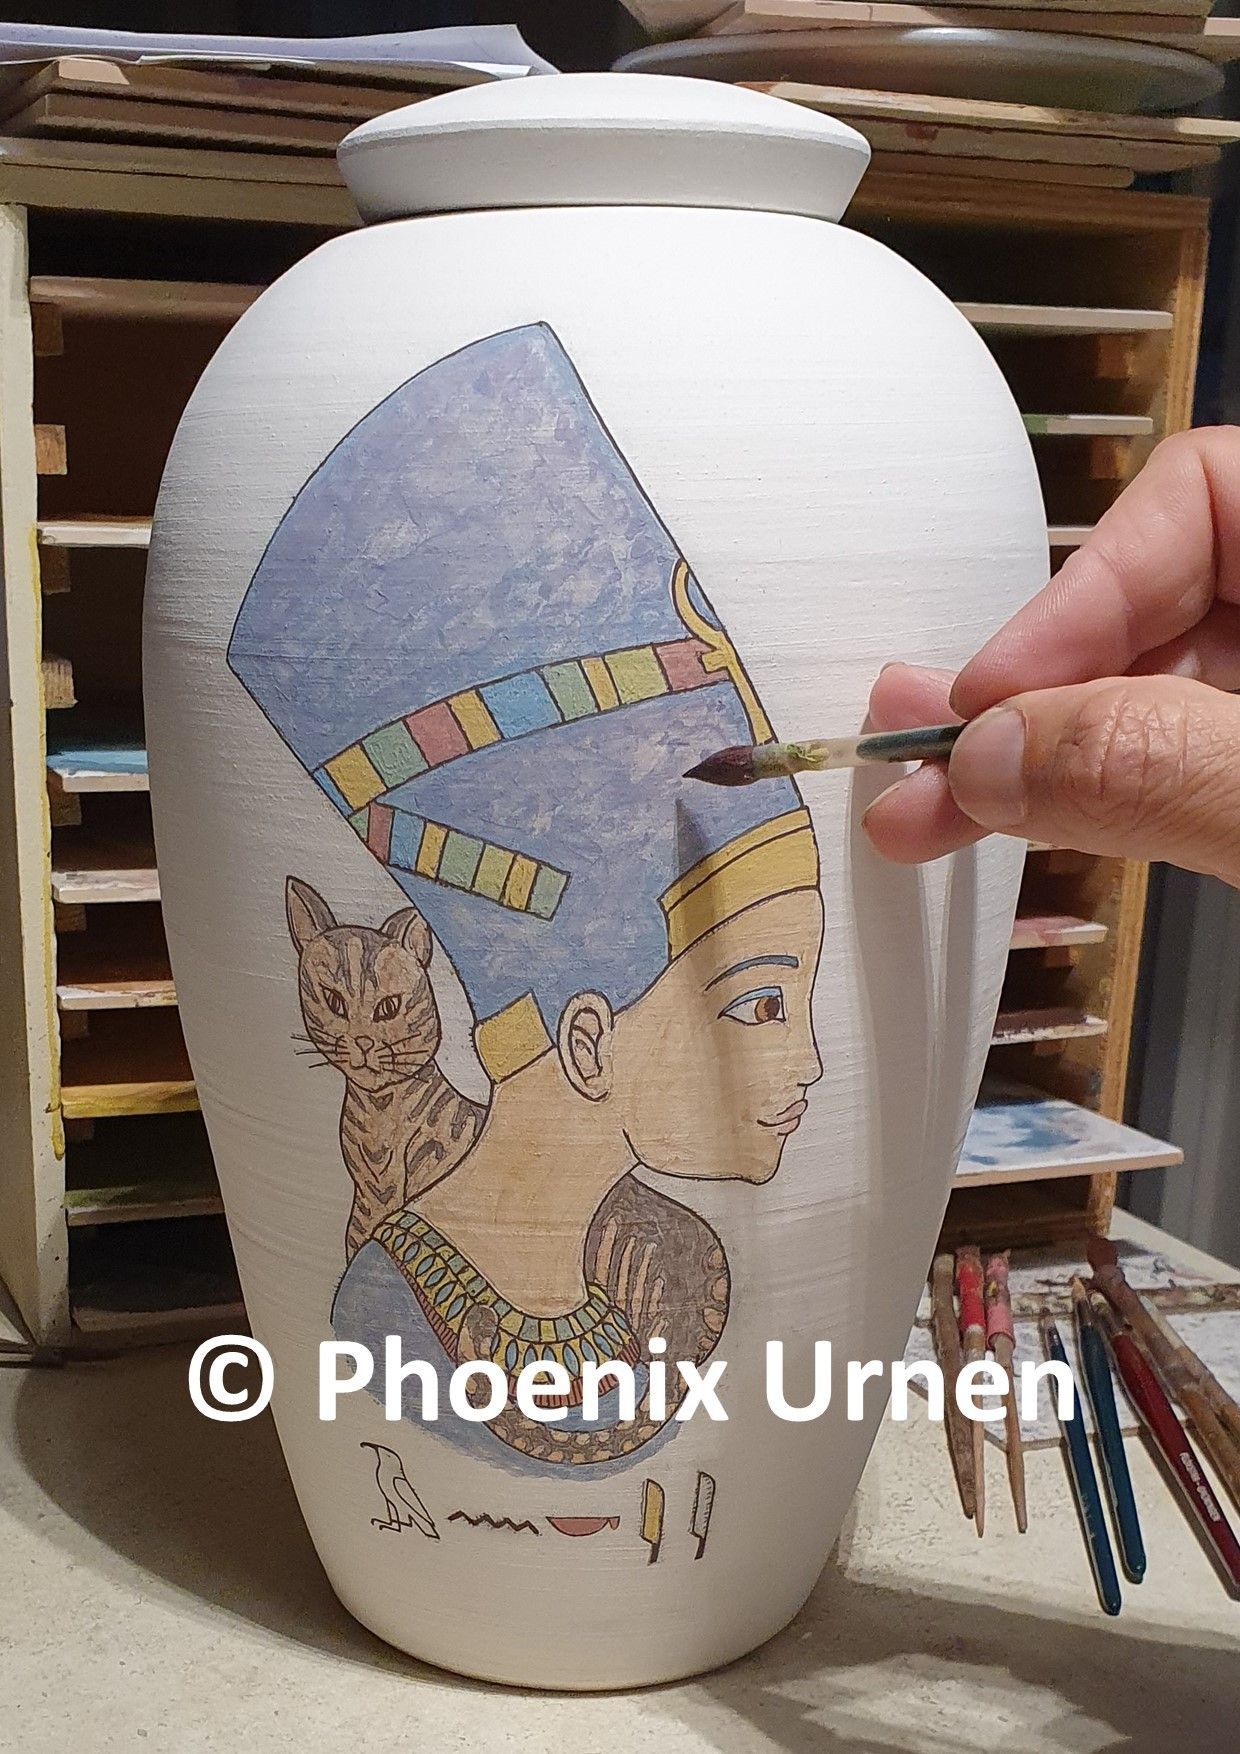 urn speciaalopdracht naar Egyptisch motief Nefertiti